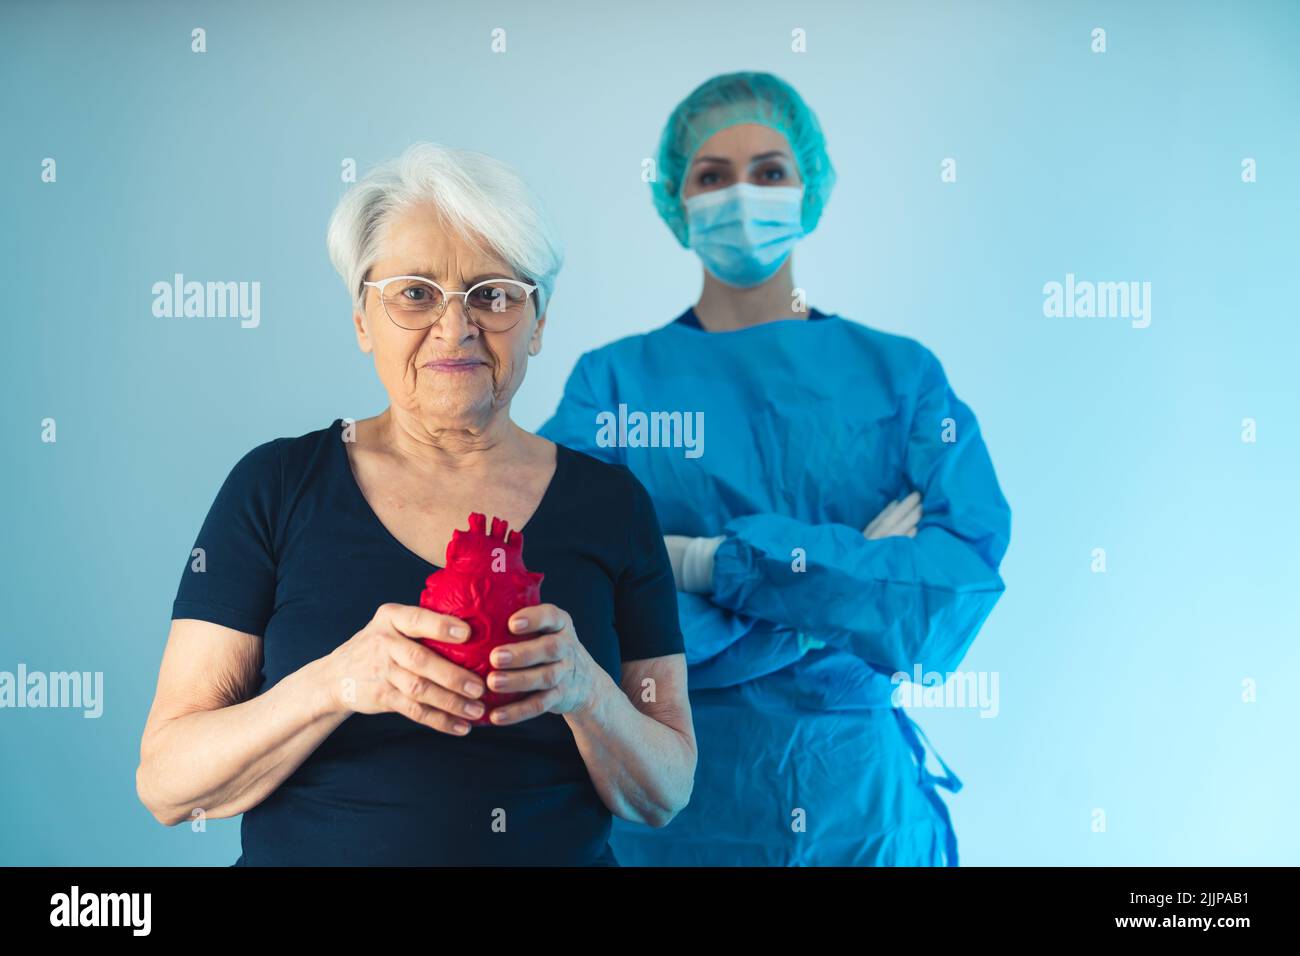 Vecchia donna caucasica in piedi davanti ad un medico chirurgo mentre tiene un cuore artificiale rosso davanti al suo petto. Foto di alta qualità Foto Stock